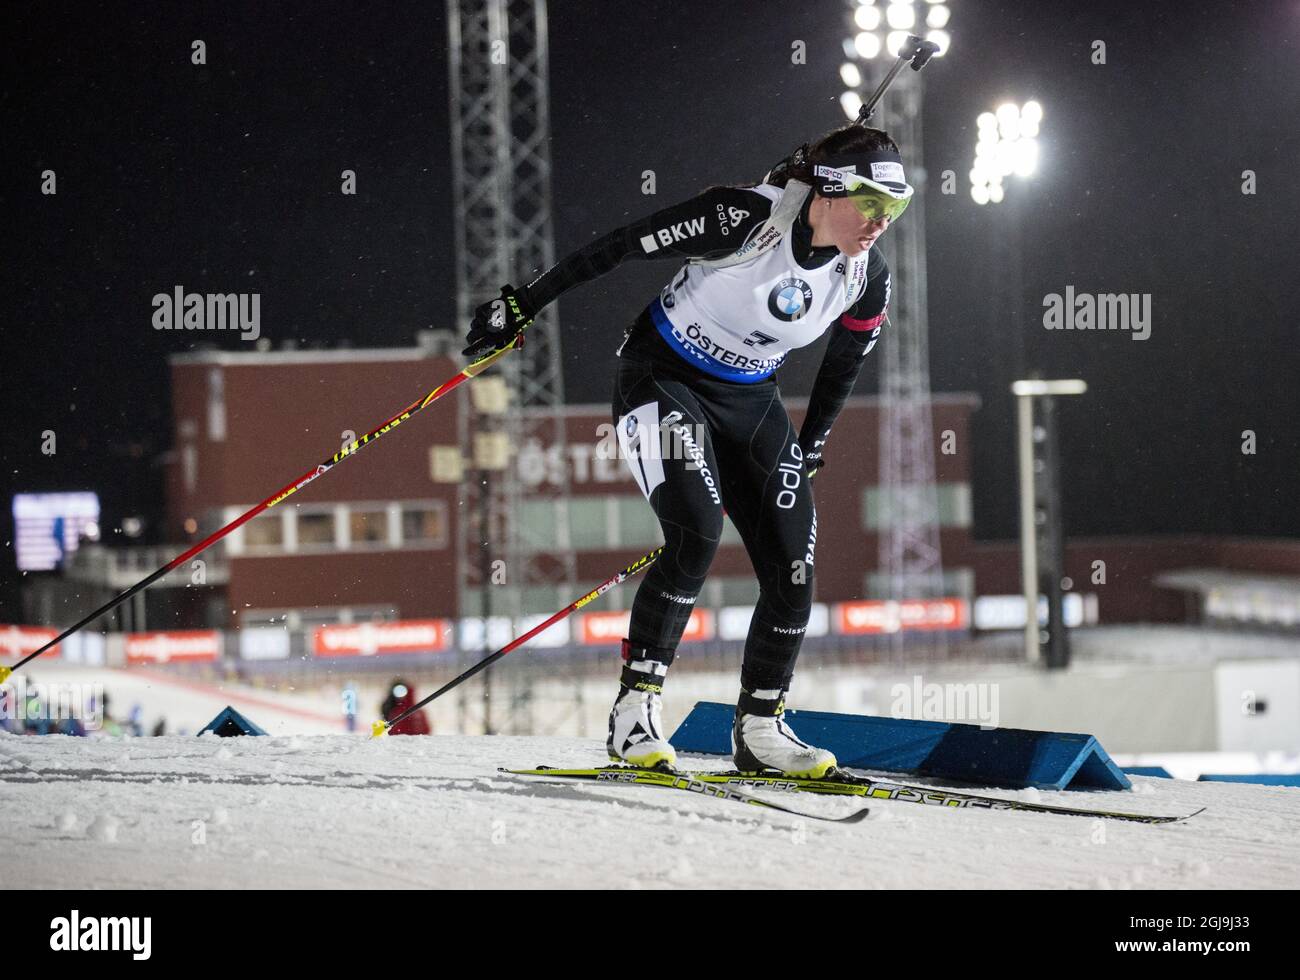 Lena Haecki della Svizzera in azione durante la gara di sprint femminile di 7.5 km alla IBU Biathlon World Cup di Ostersund, Svezia, il 5 dicembre 2015. Foto: Christine Olsson / TT / code 10430 Foto Stock